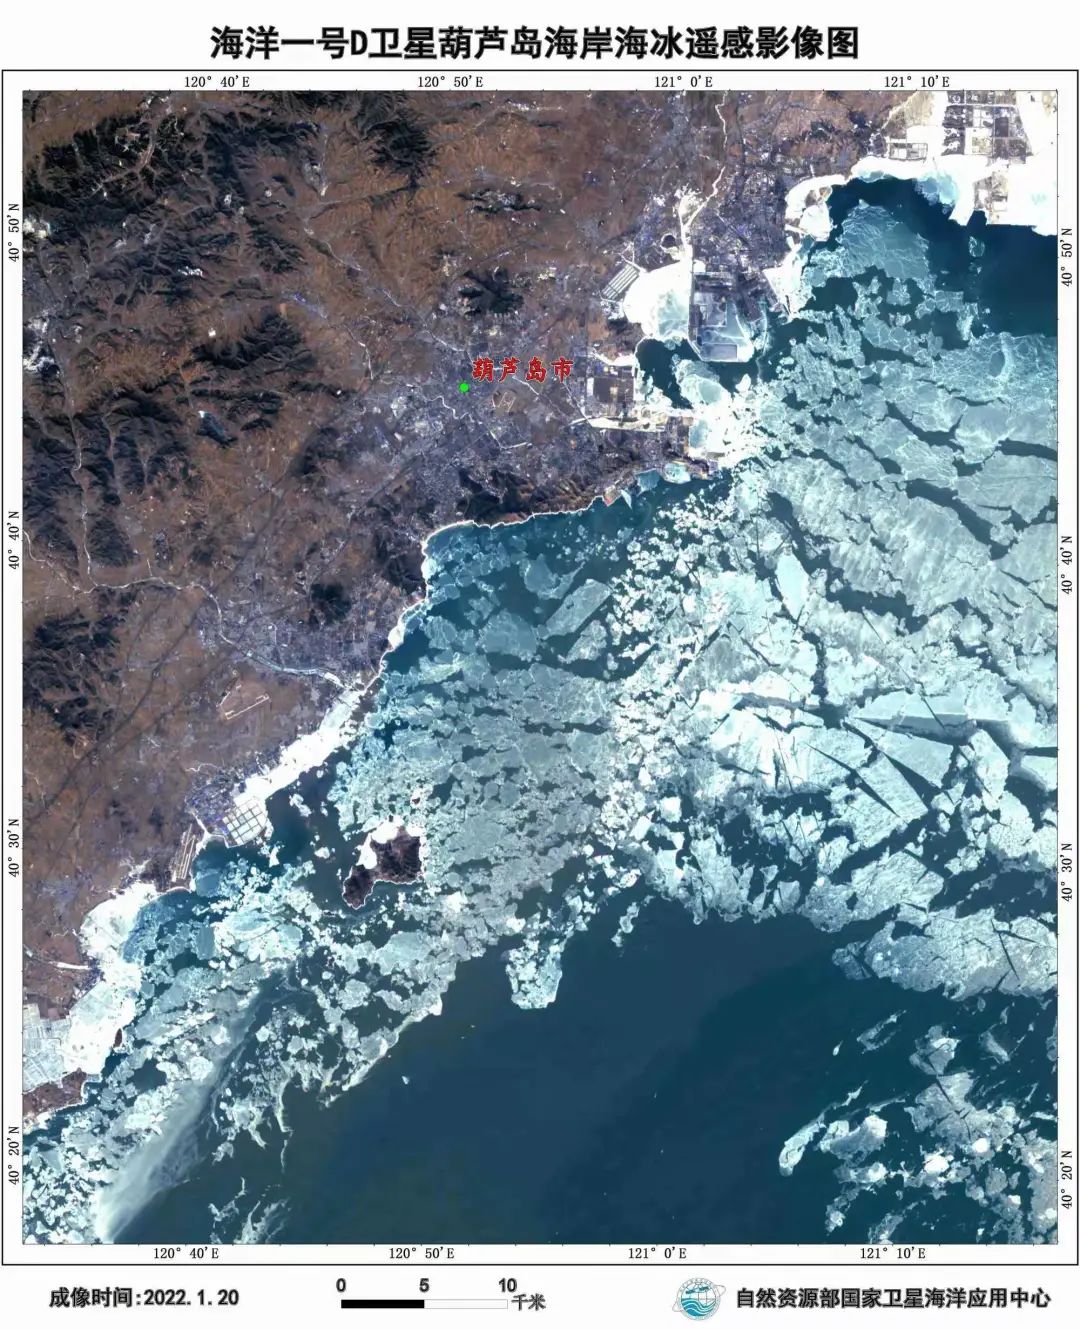 根据海洋一号 d卫星遥感实况图分析,目前辽东湾的浮冰外缘线达到52